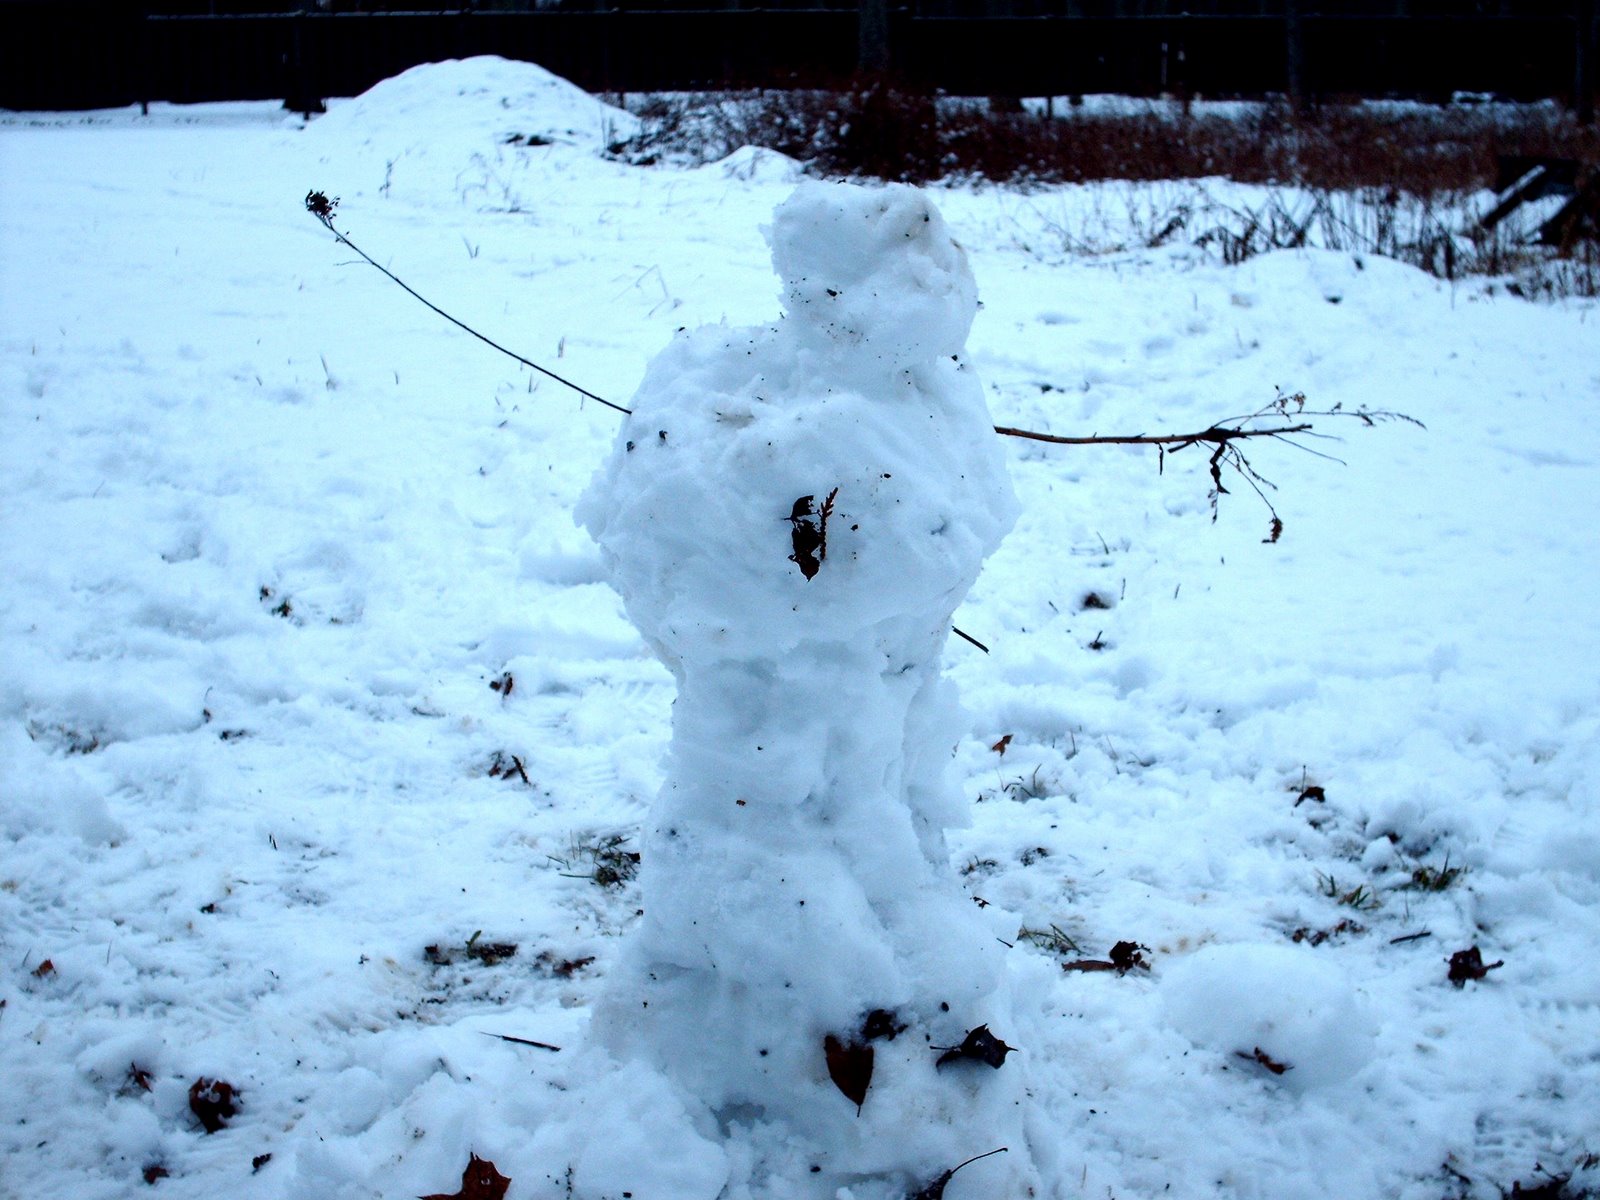 [xmas+snowman+2006.jpg]